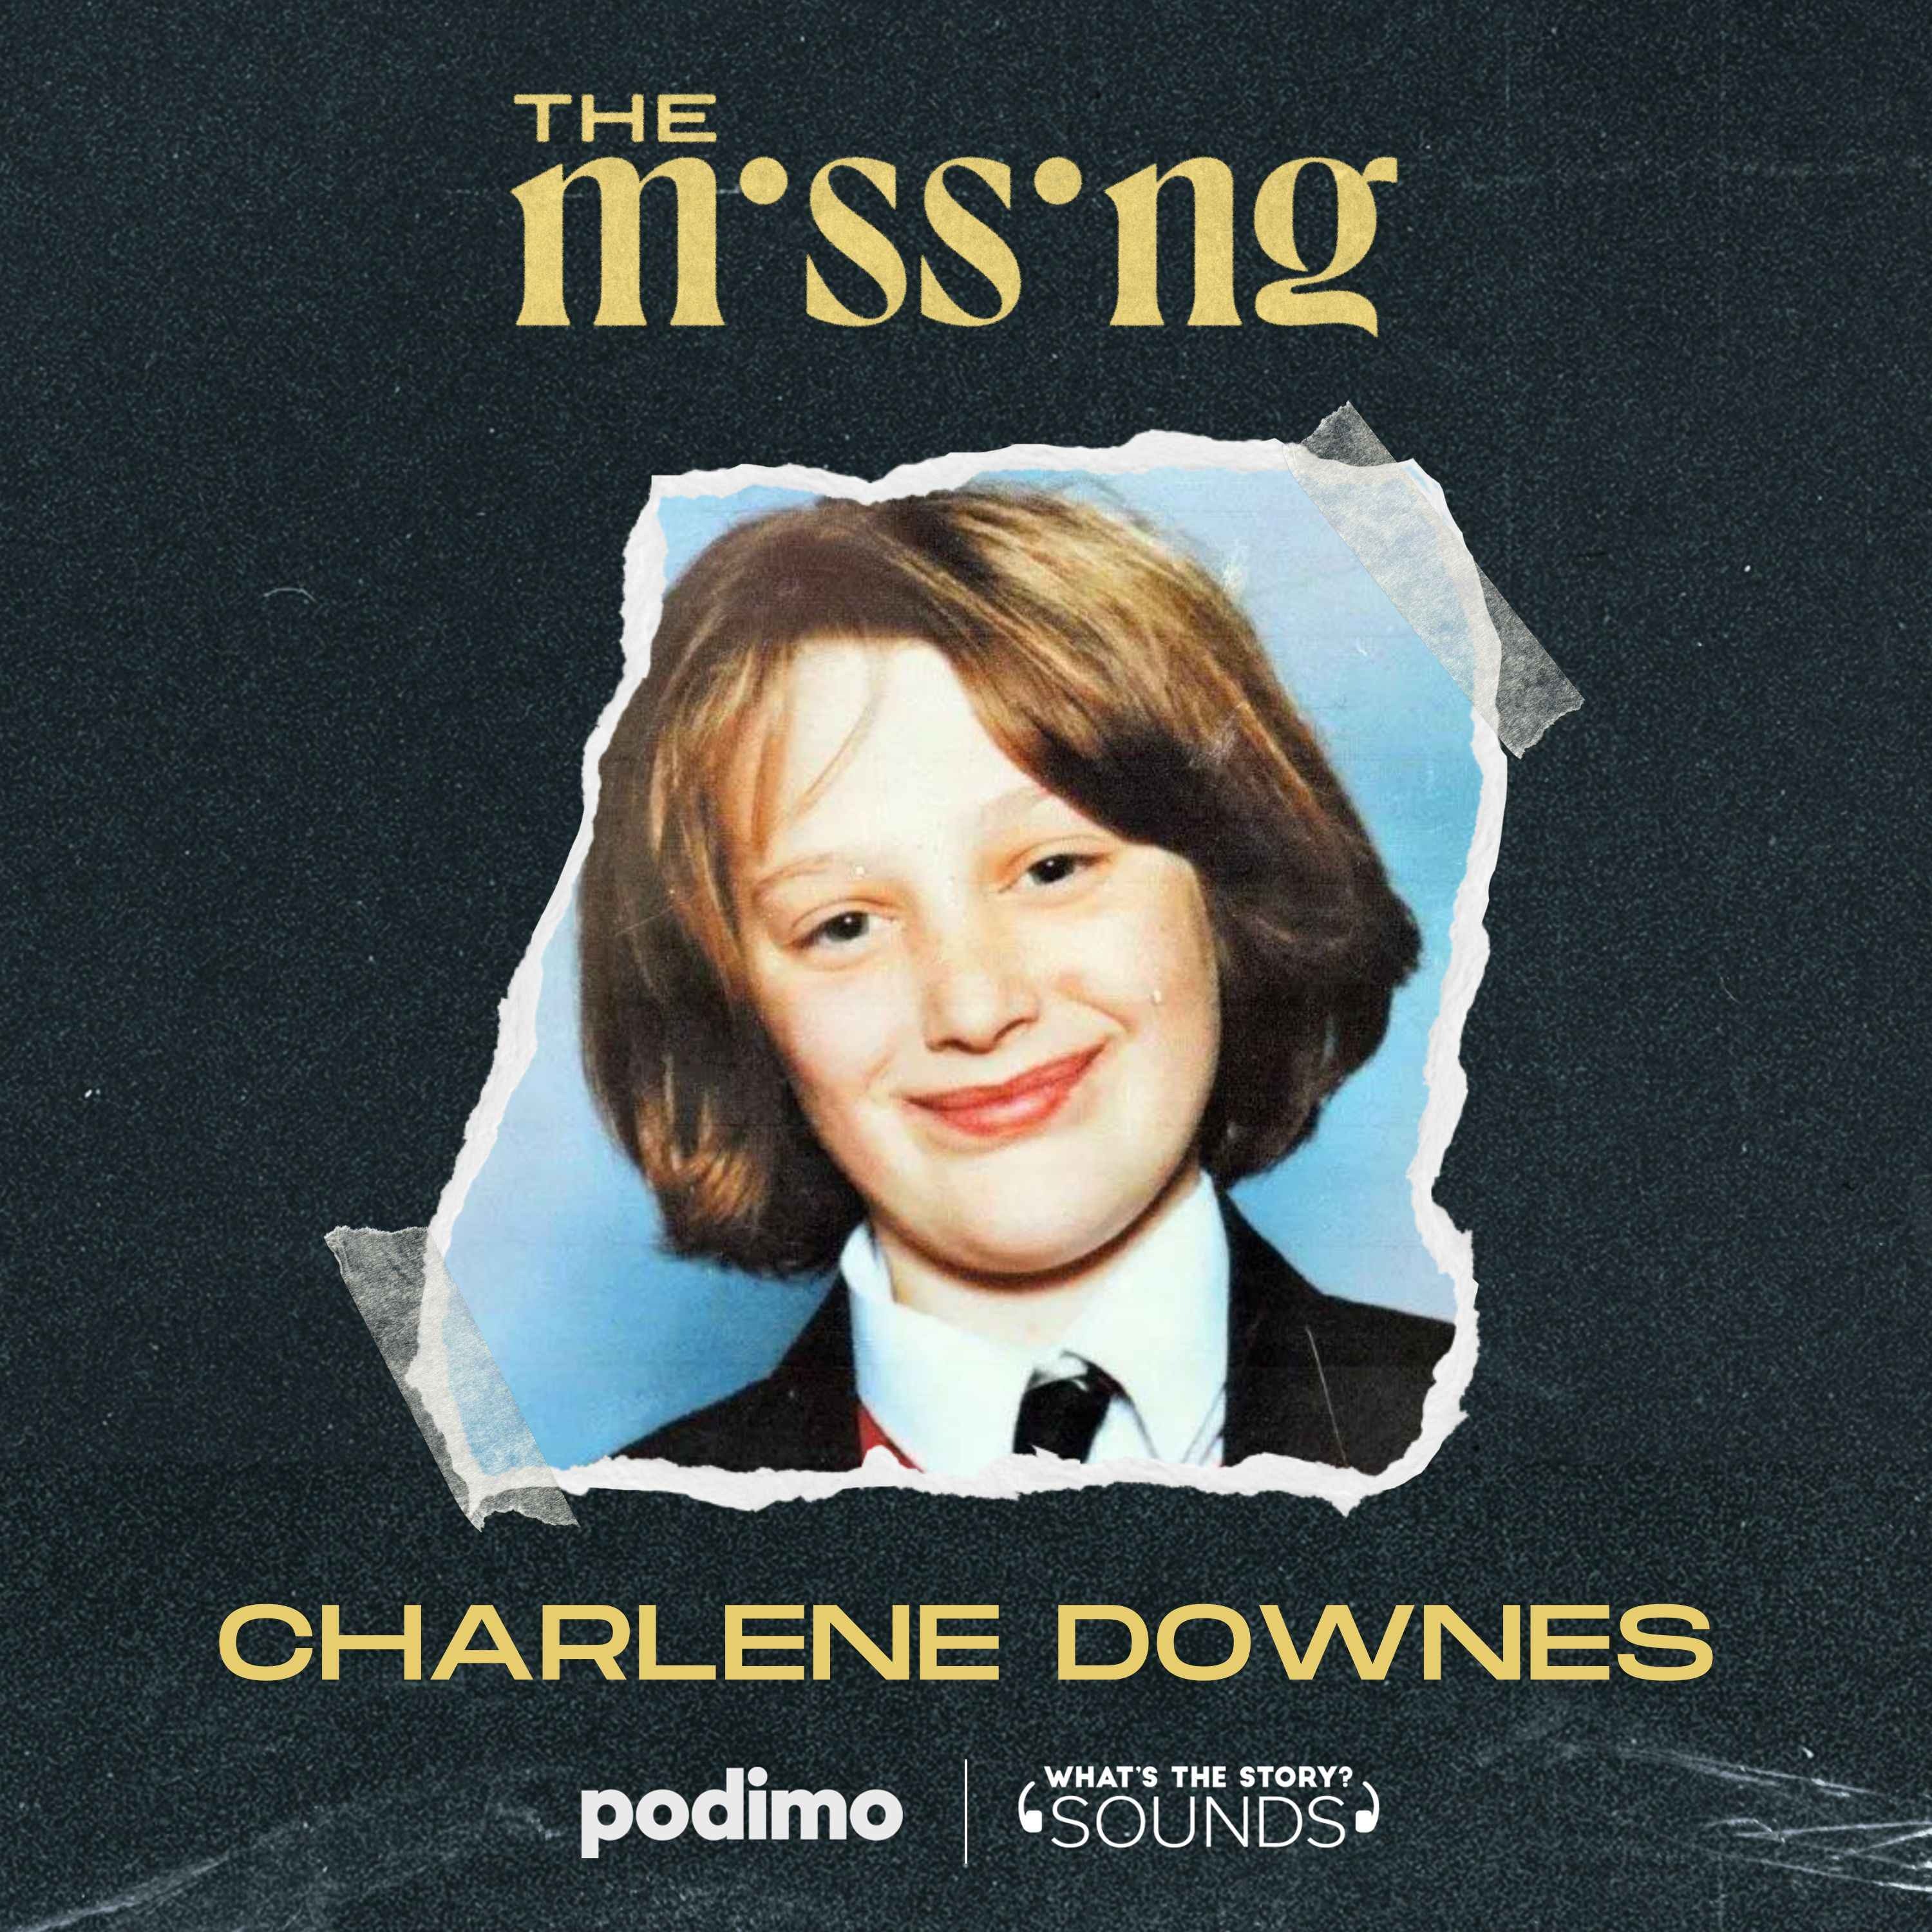 Charlene Downes